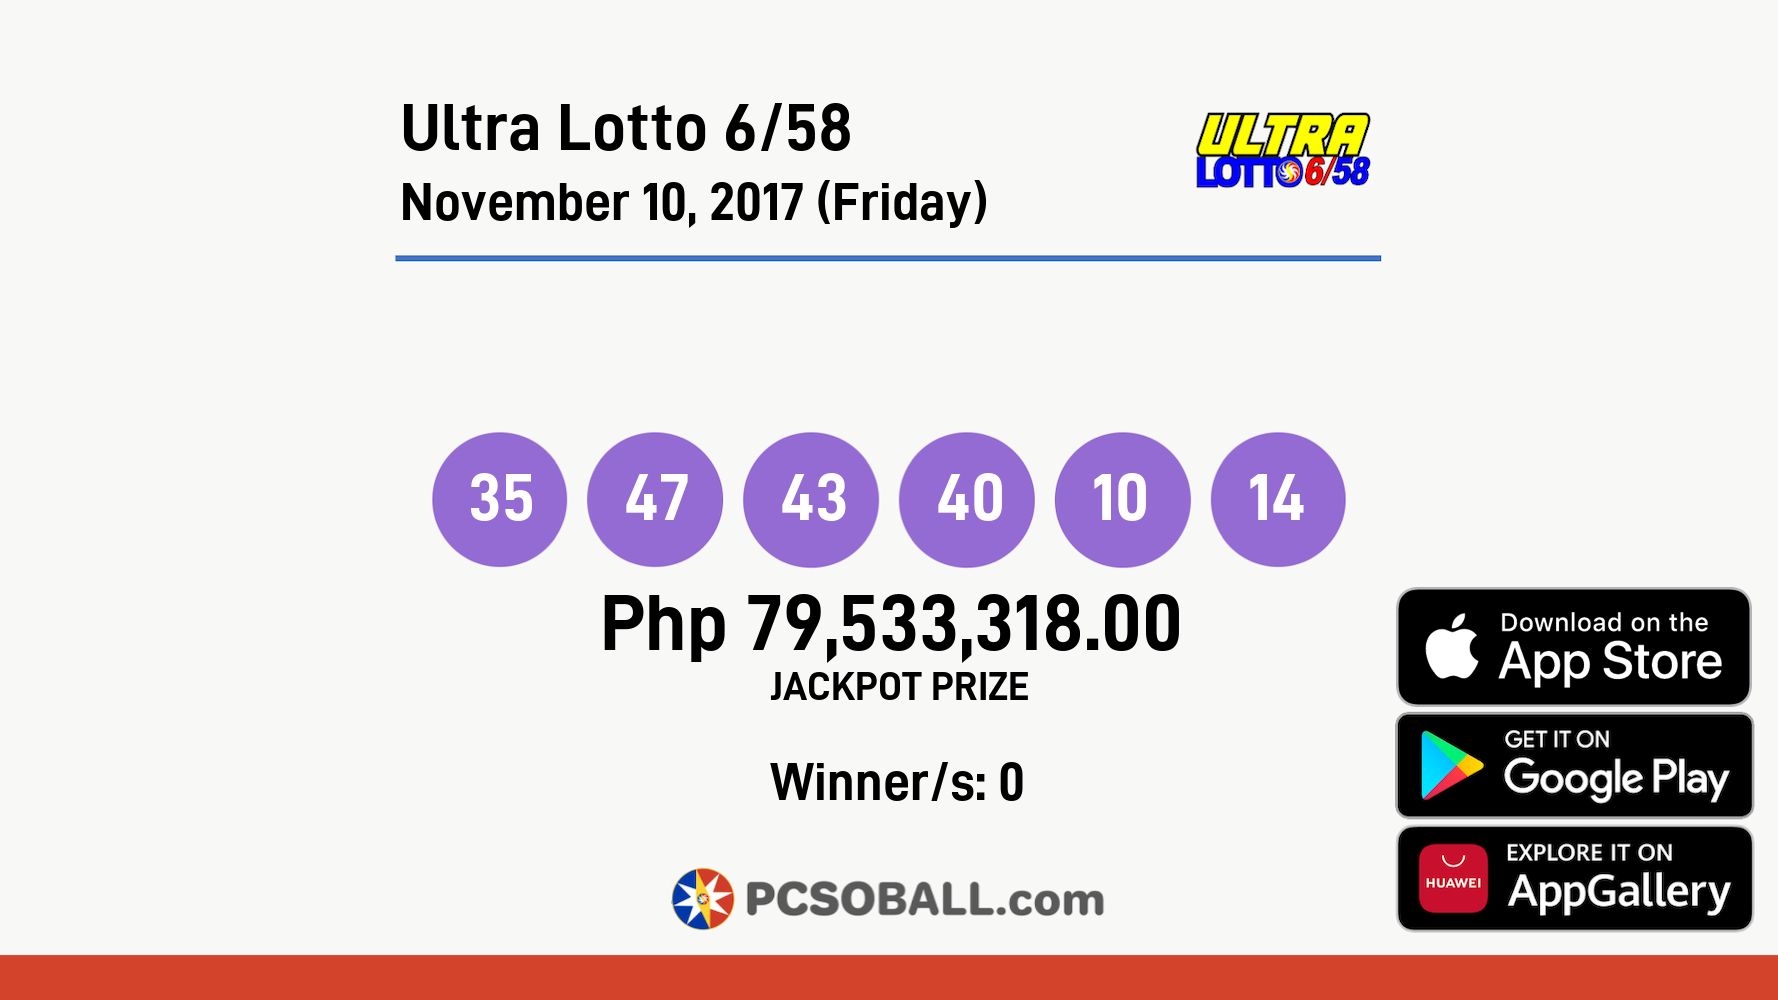 Ultra Lotto 6/58 November 10, 2017 (Friday) Result